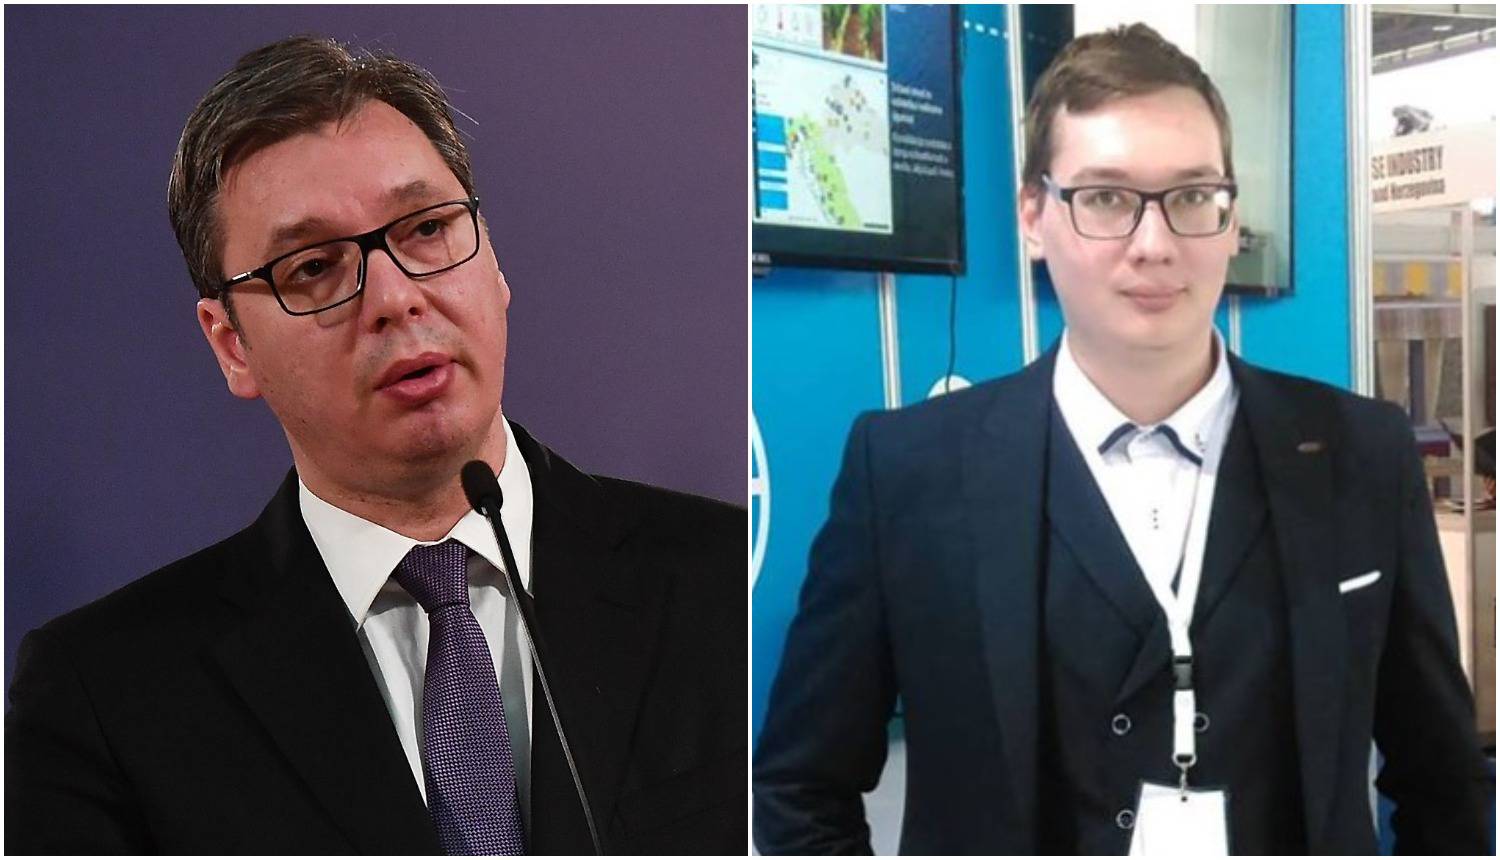 Ljubavni jadi Vučićeva dvojnika: Tražim djevojku kojoj ne smeta sličnost sa predsjednikom Srbije